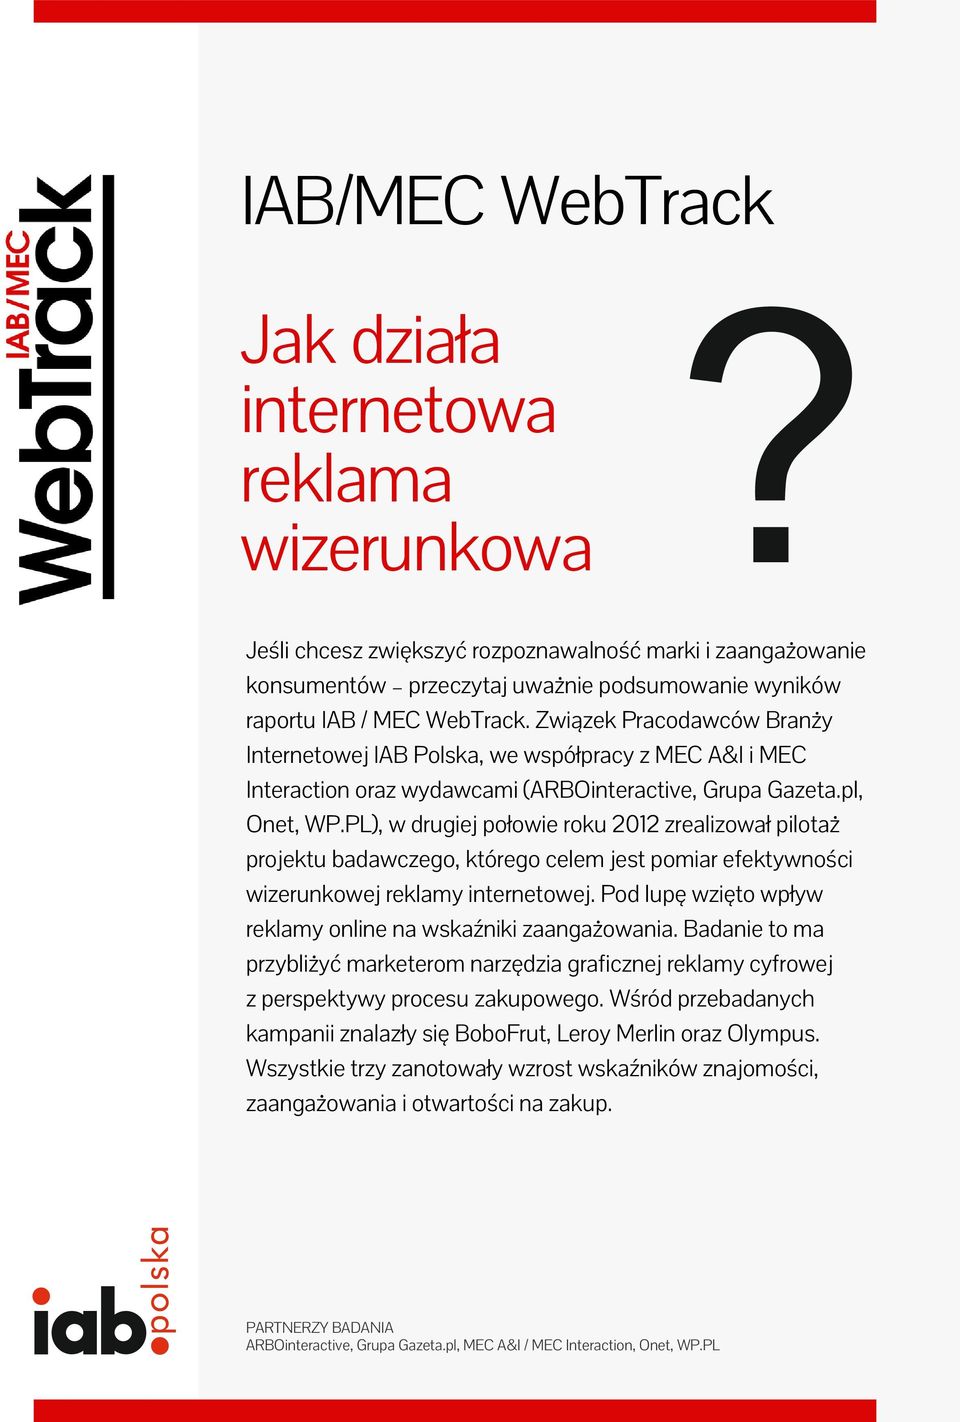 Związek Pracodawców Branży Internetowej IAB Polska, we współpracy z MEC A&I i MEC Interaction oraz wydawcami (ARBOinteractive, Grupa Gazeta.pl, Onet, WP.